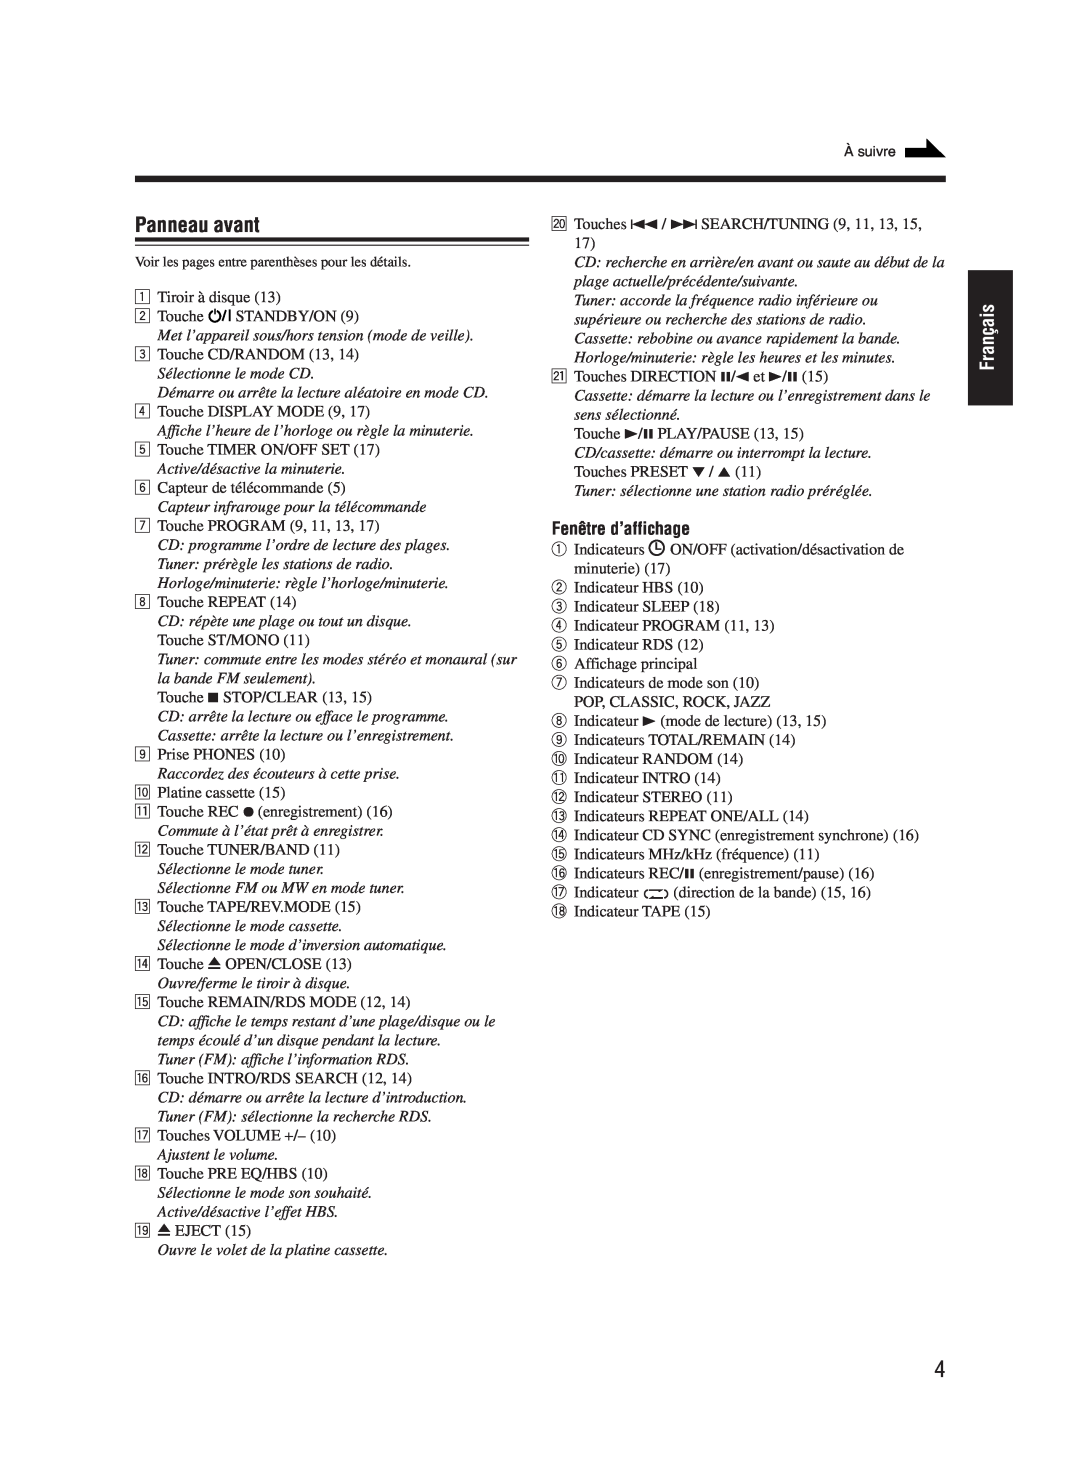 JVC UX-M55 manual Panneau avant, Français, Fenêtre d’affichage 